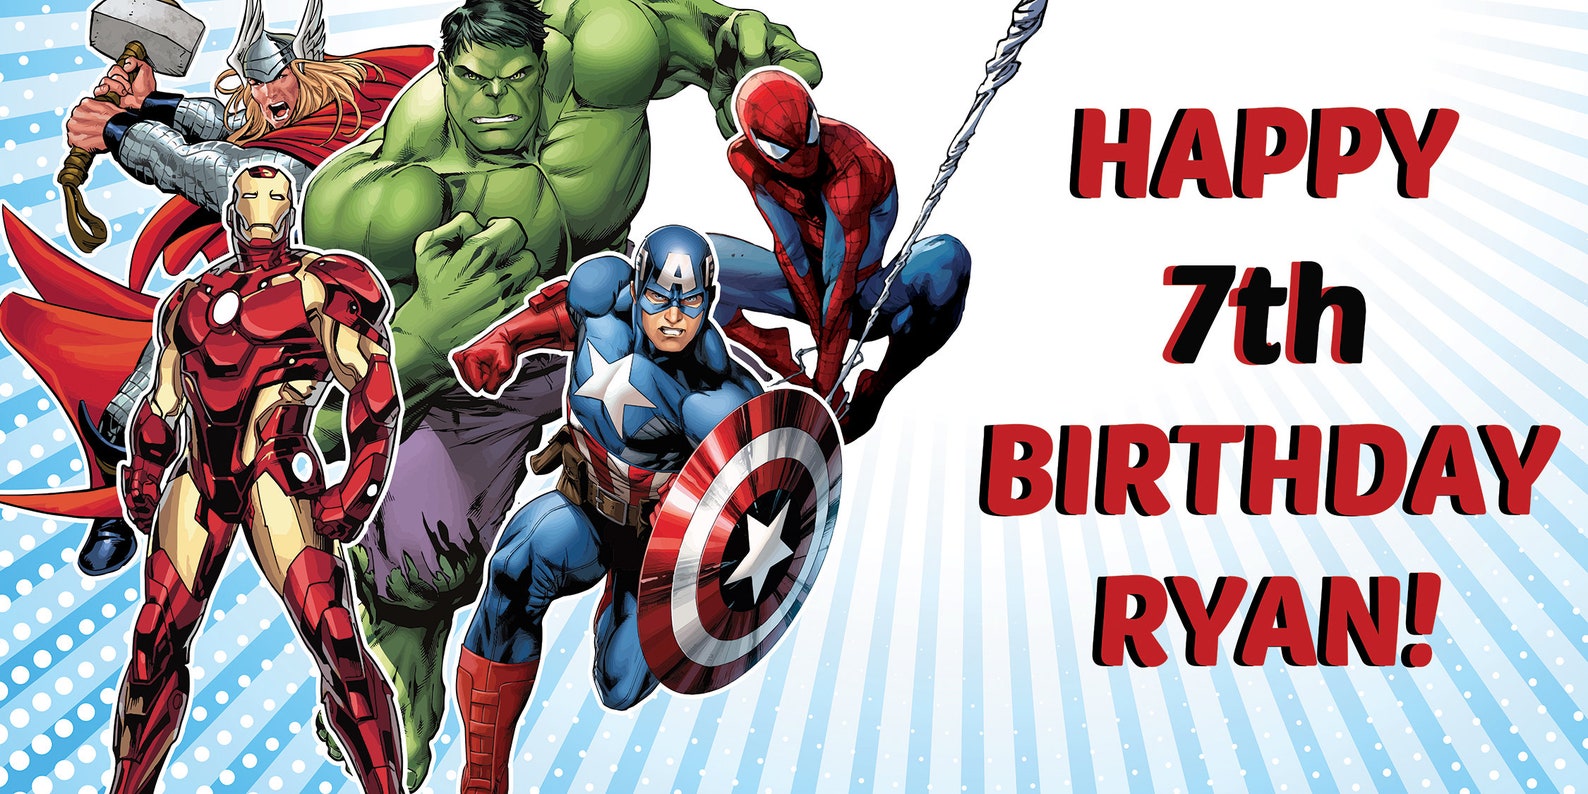 personalized-avengers-banner-for-marvel-superhero-birthday-etsy